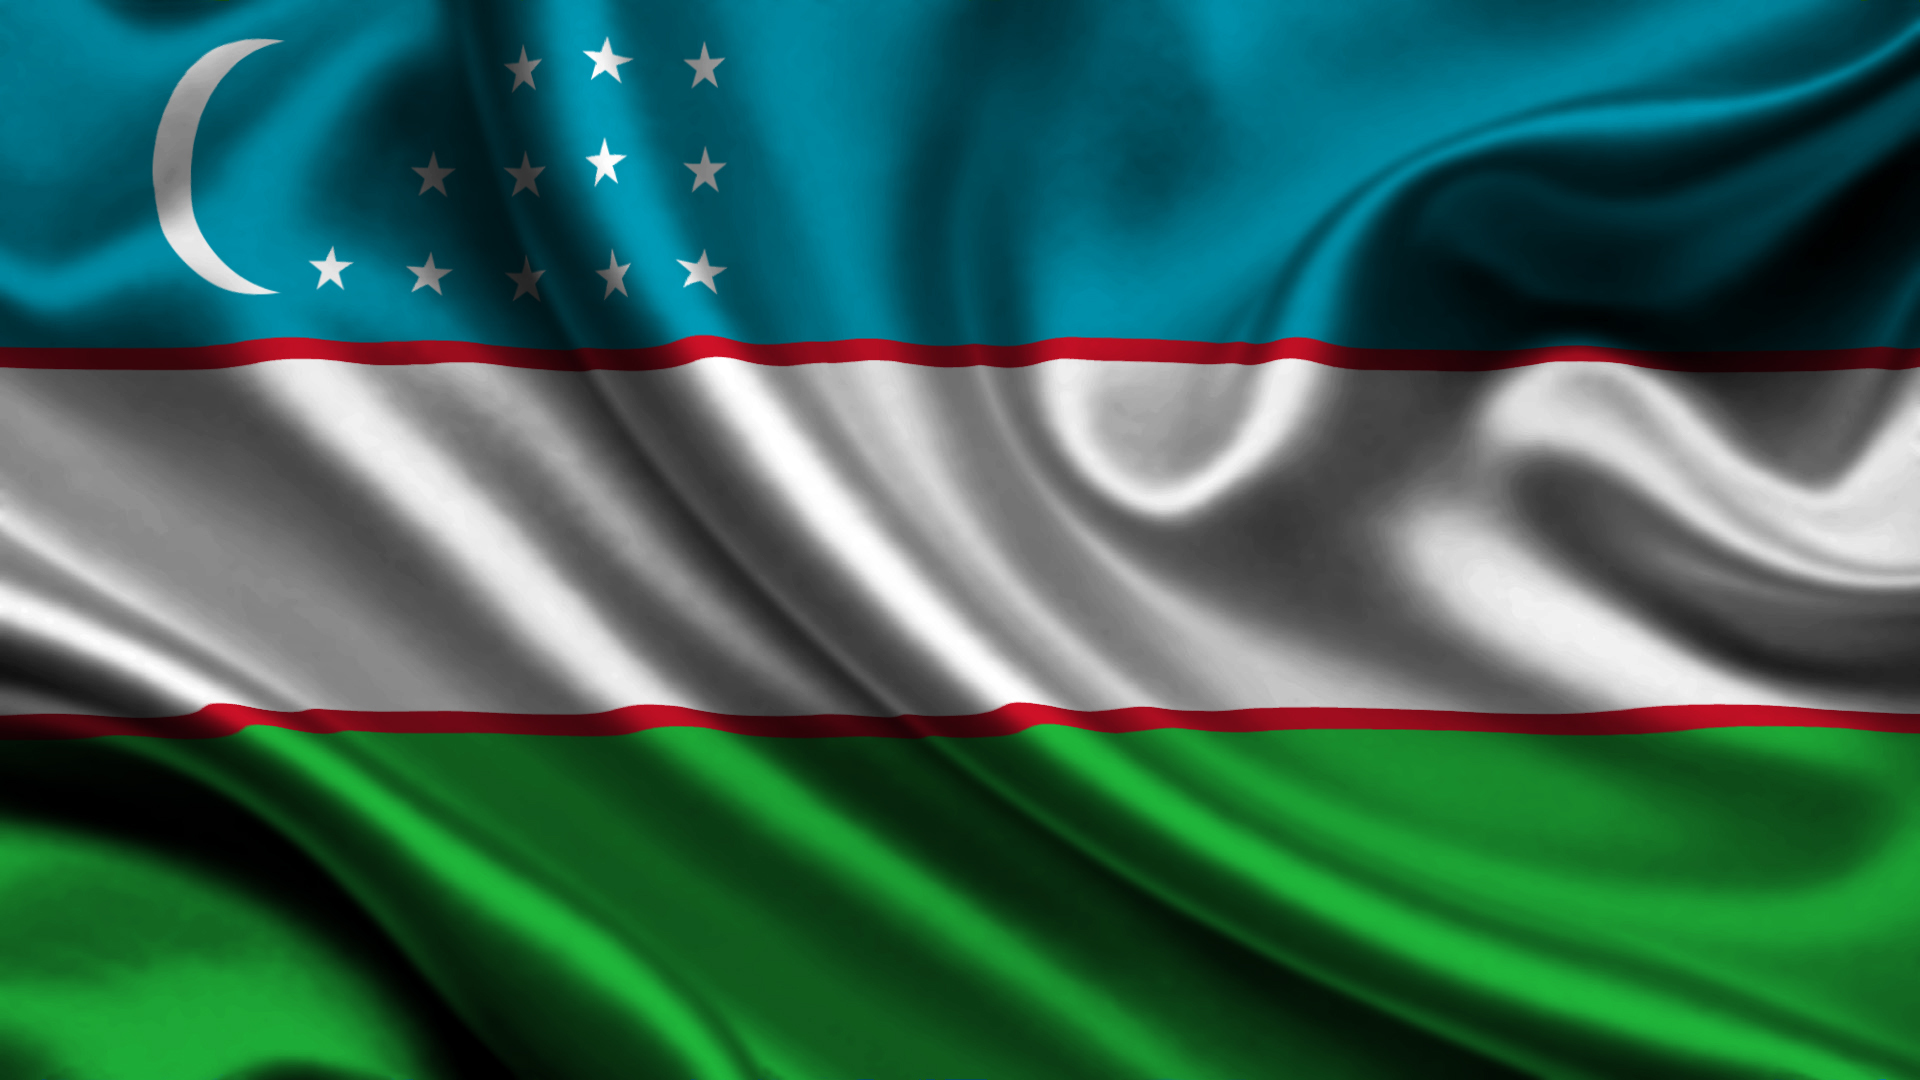 Узбекистан, флаг HD фото картинки, обои рабочий стол